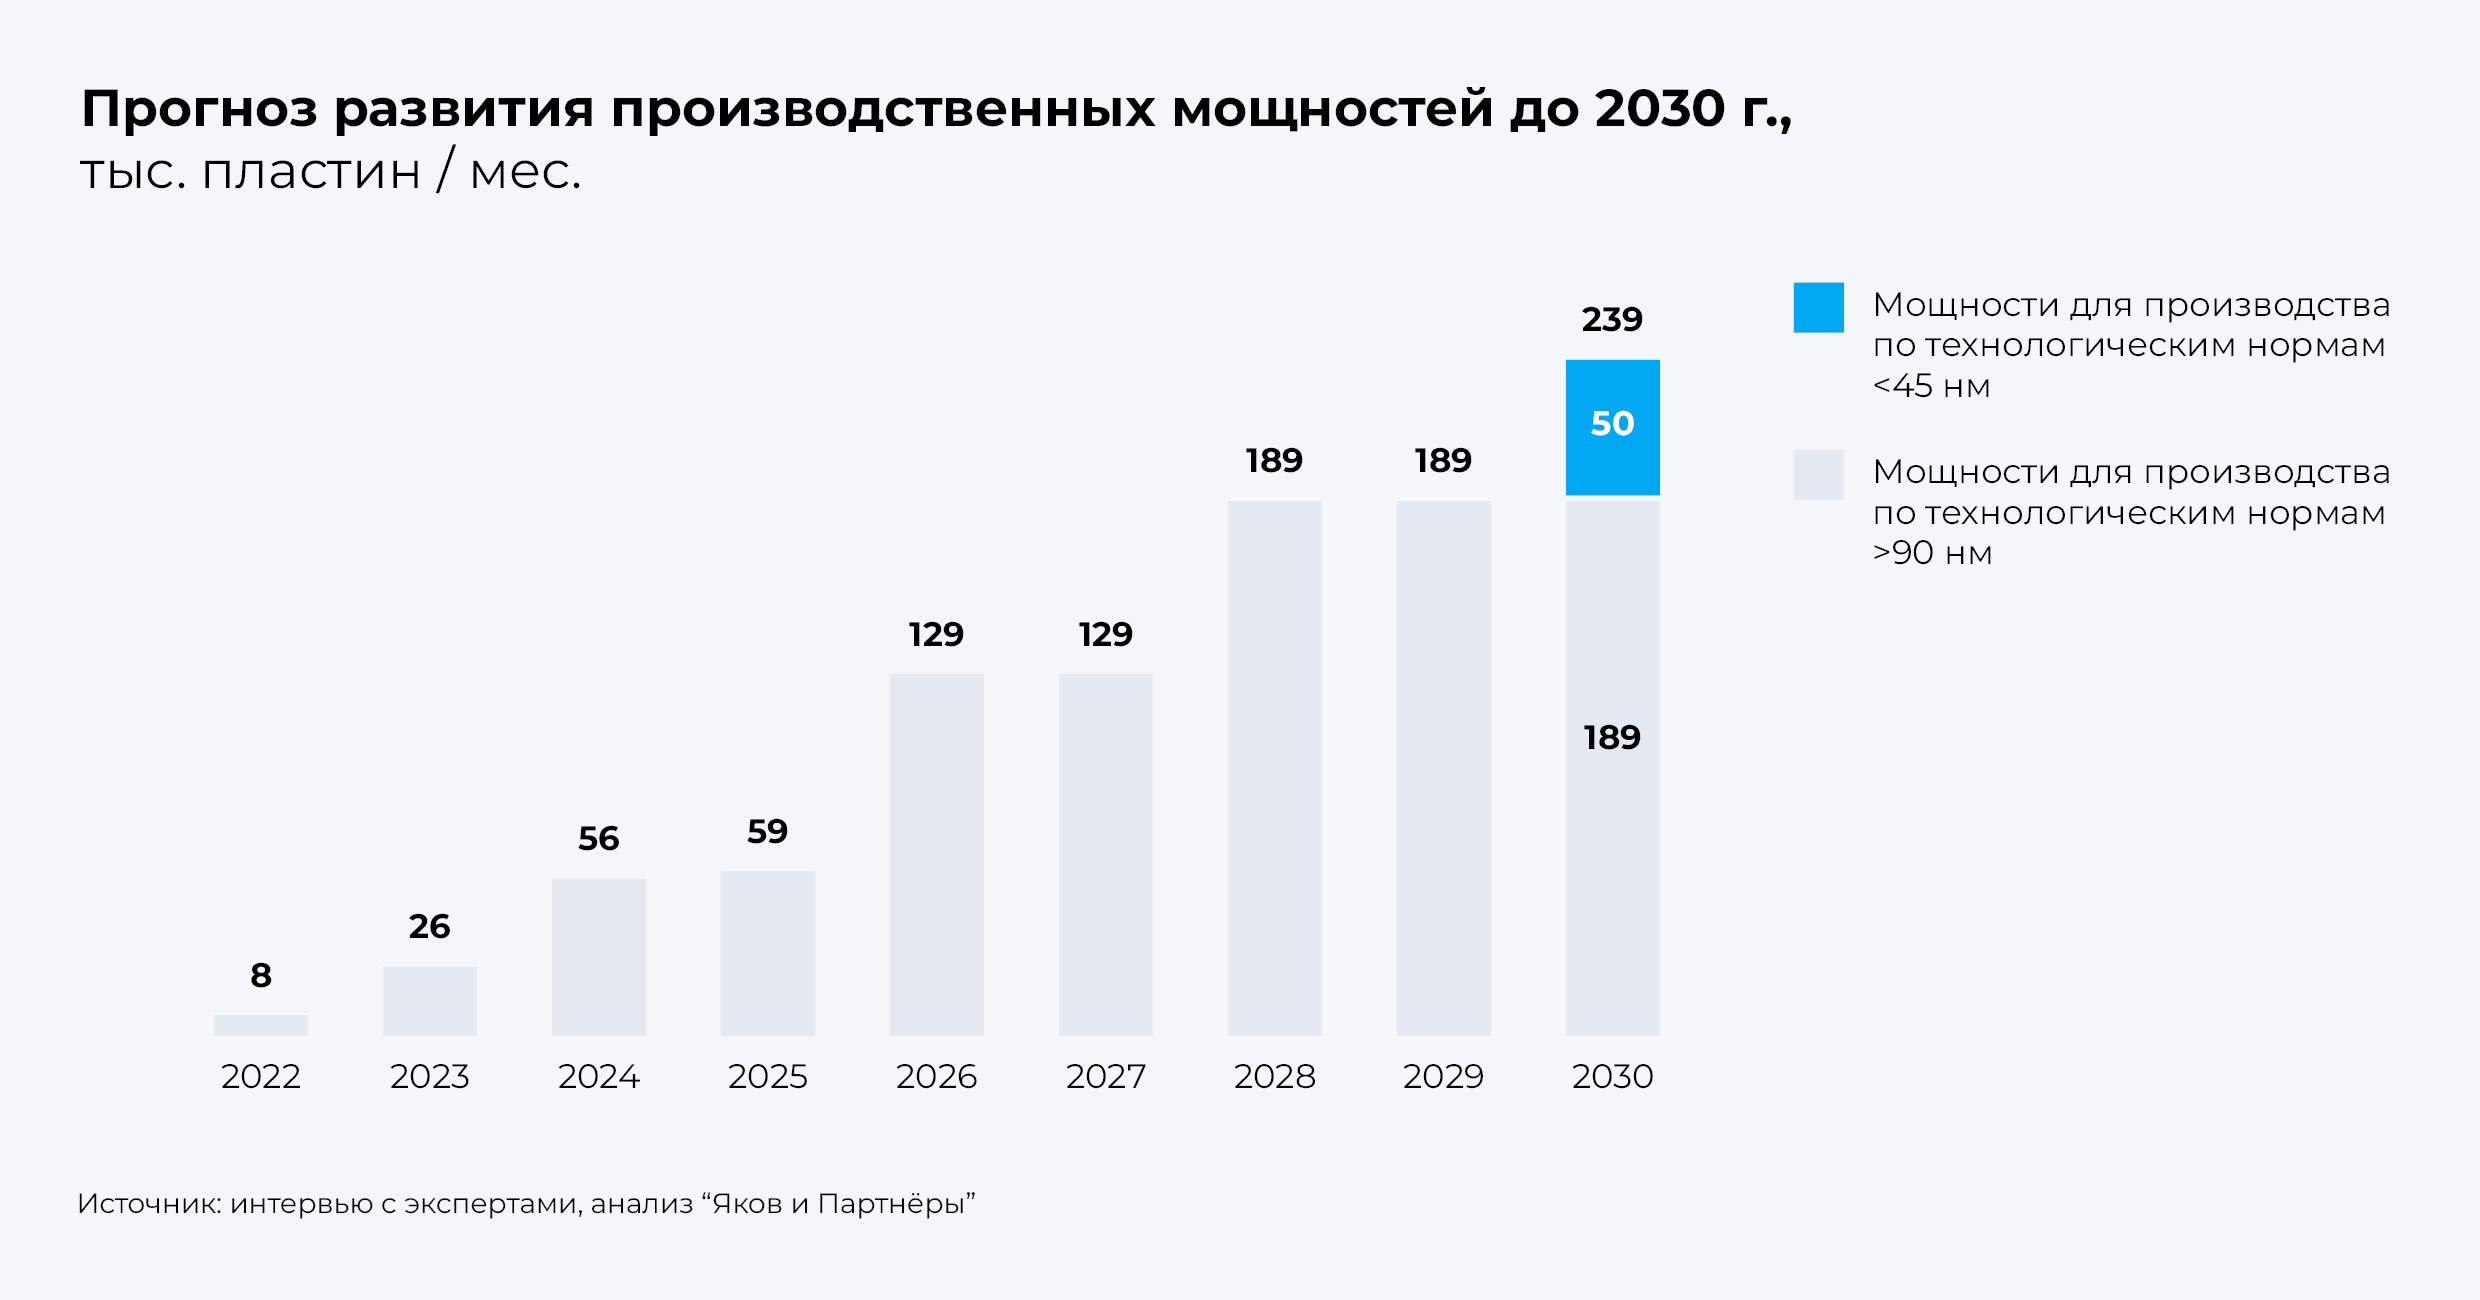 Прогноз развития производственных мощностей до 2030 г.